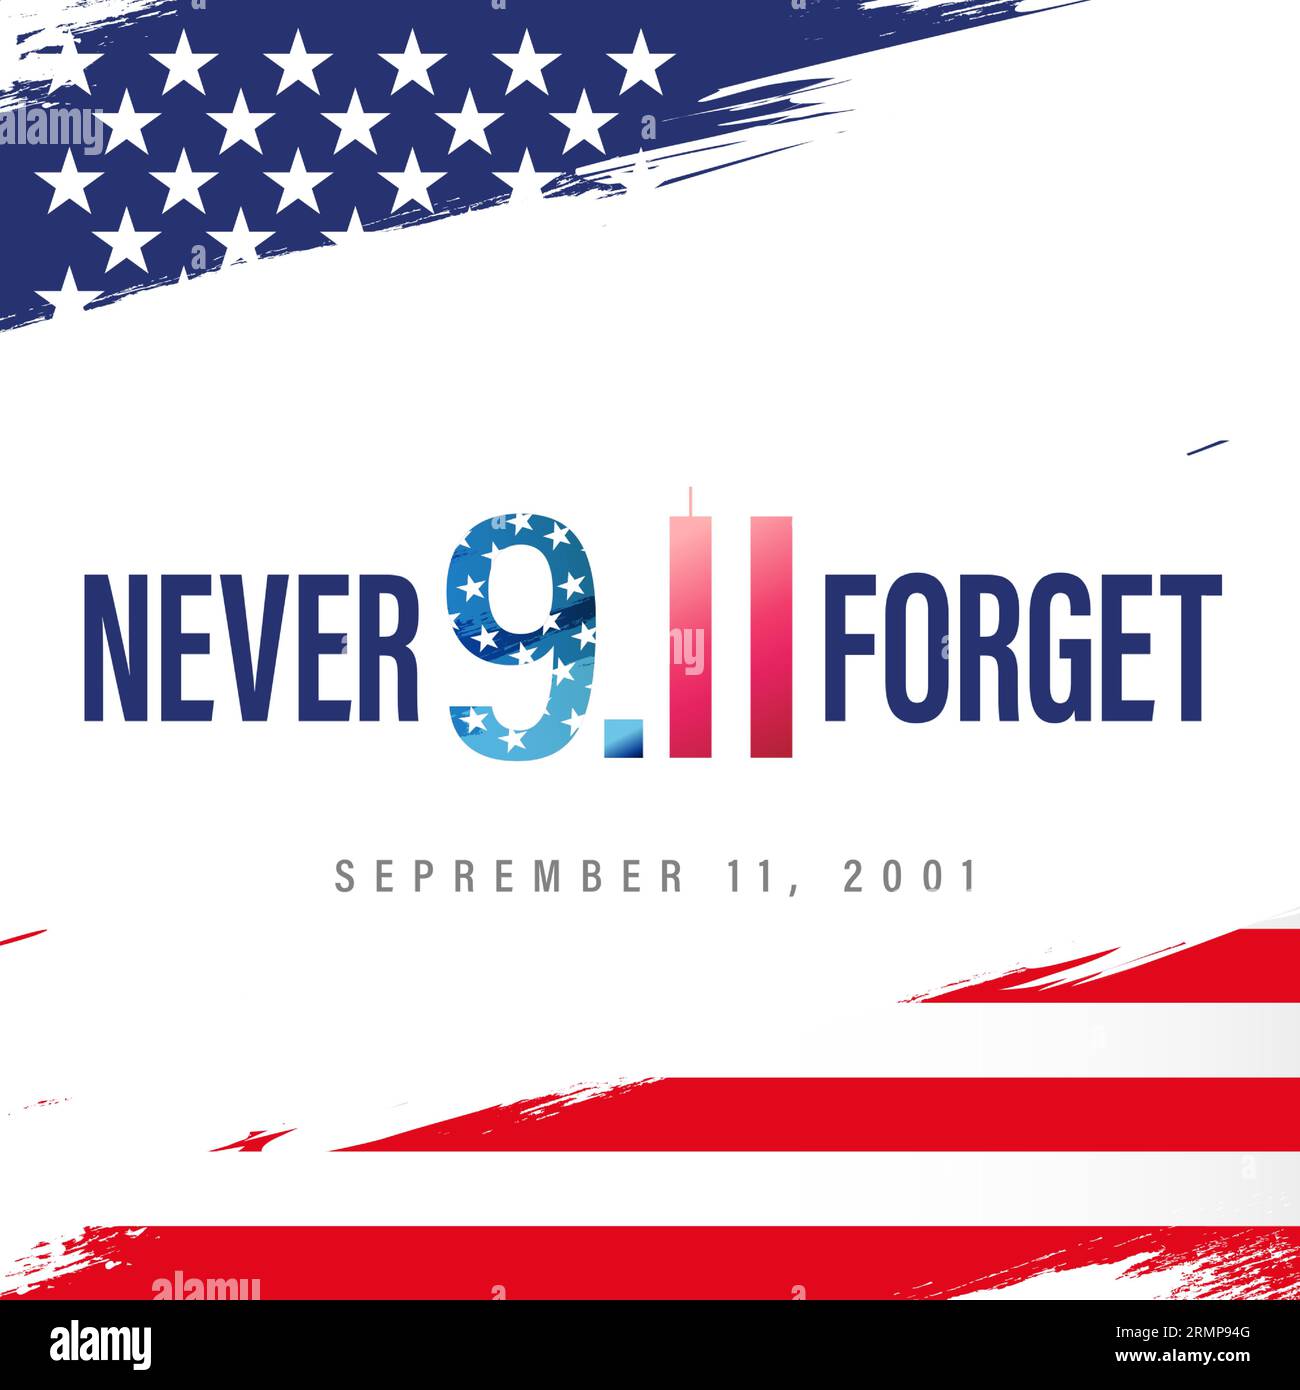 Patriot Day, wir werden nie vergessen 9,11 mit Pinselstrich Hintergrund. Vergessen Sie Nie Den 11. September 2001. Vektor-Konzeptillustration zum Patriot Day Stock Vektor